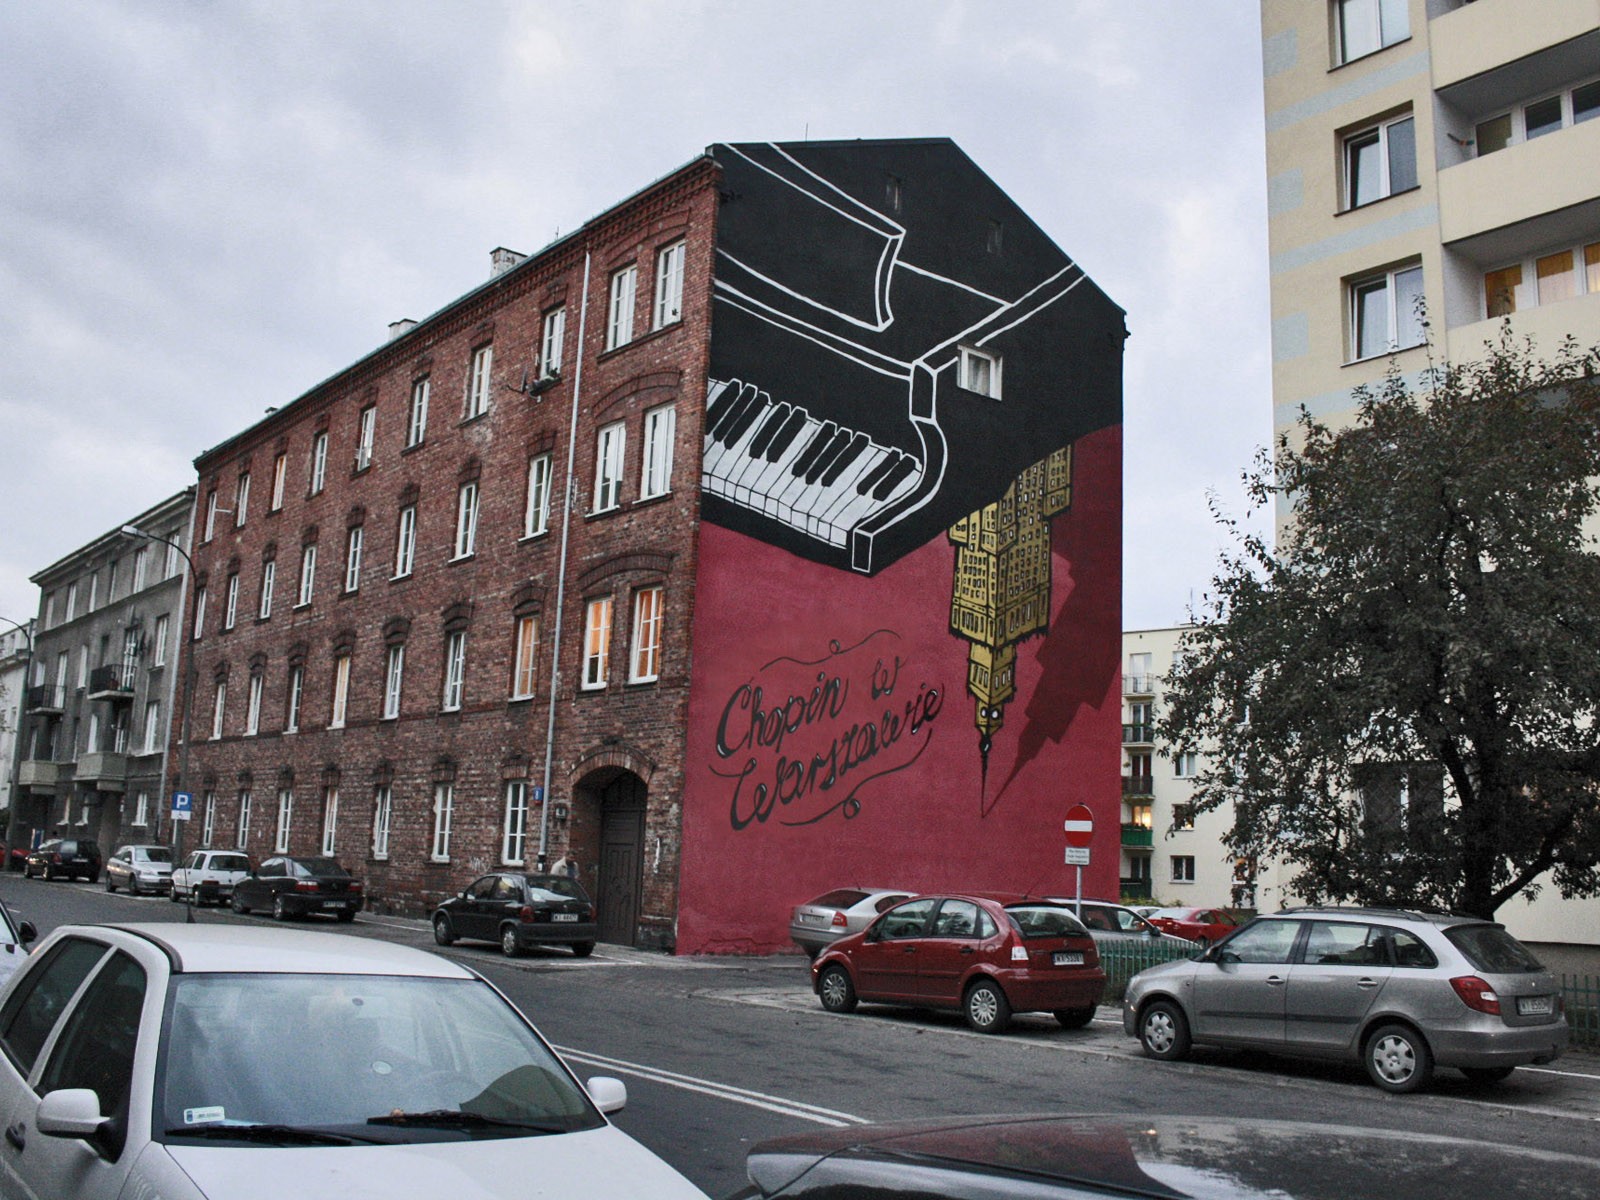 Mural konkursowy Chopin w Warszawie - Górnośląska Warszawa Powiśle | Wydarzenia kulturalne - Fryderyk w Warszawie | Portfolio